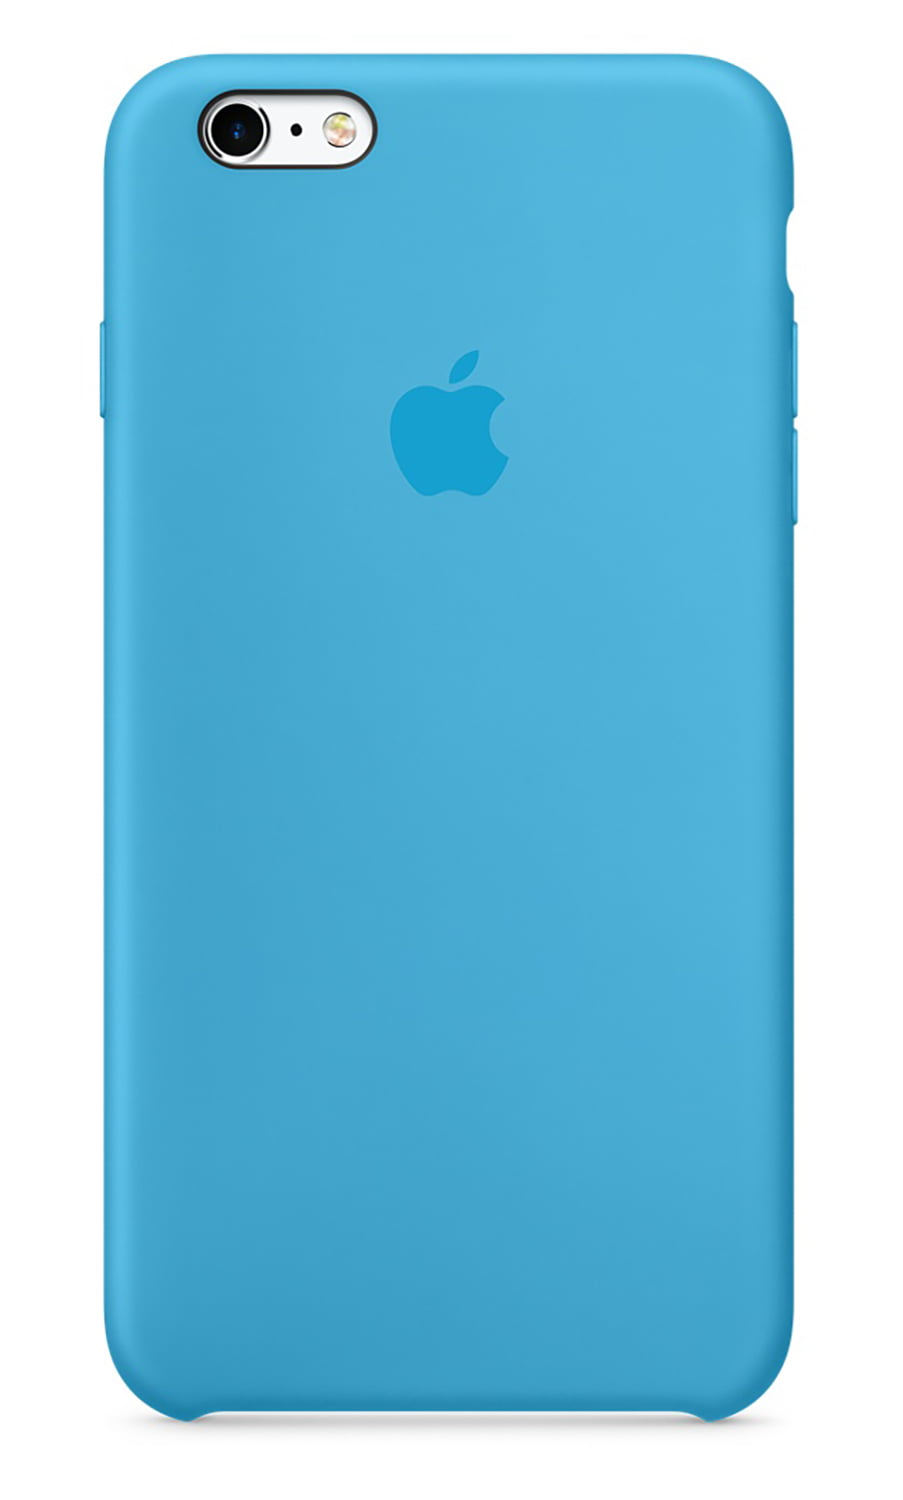 Apple iPhone 6 Plus/6s Plus Silicone Case Blue - Walmart.com